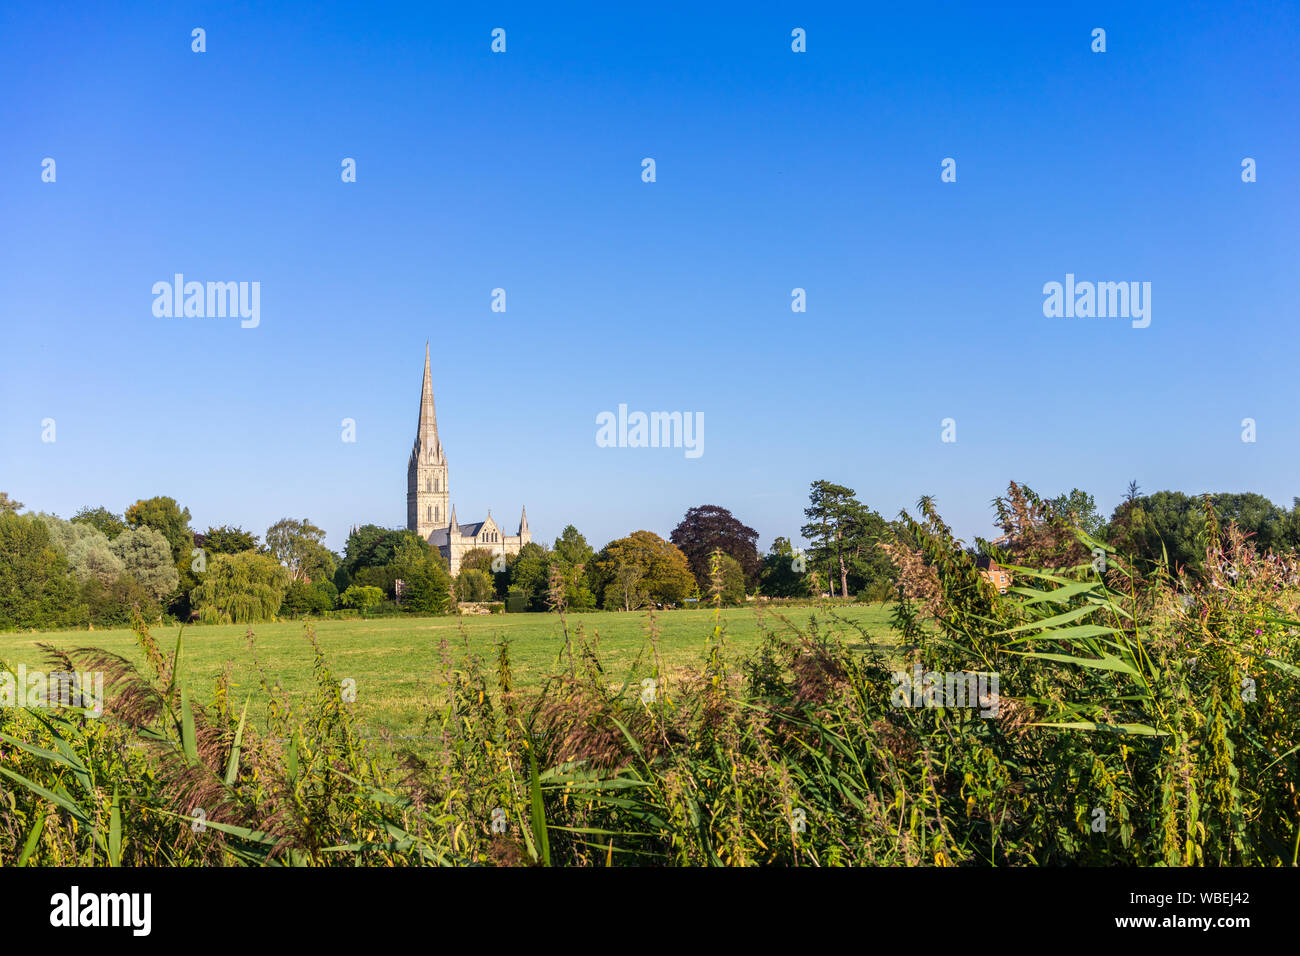 Vue sur les jardins de la reine Elizabeth au cours de l'été 2019 avec la cathédrale de Salisbury en arrière-plan, Salisbury, Wiltshire, Angleterre, Royaume-Uni Banque D'Images